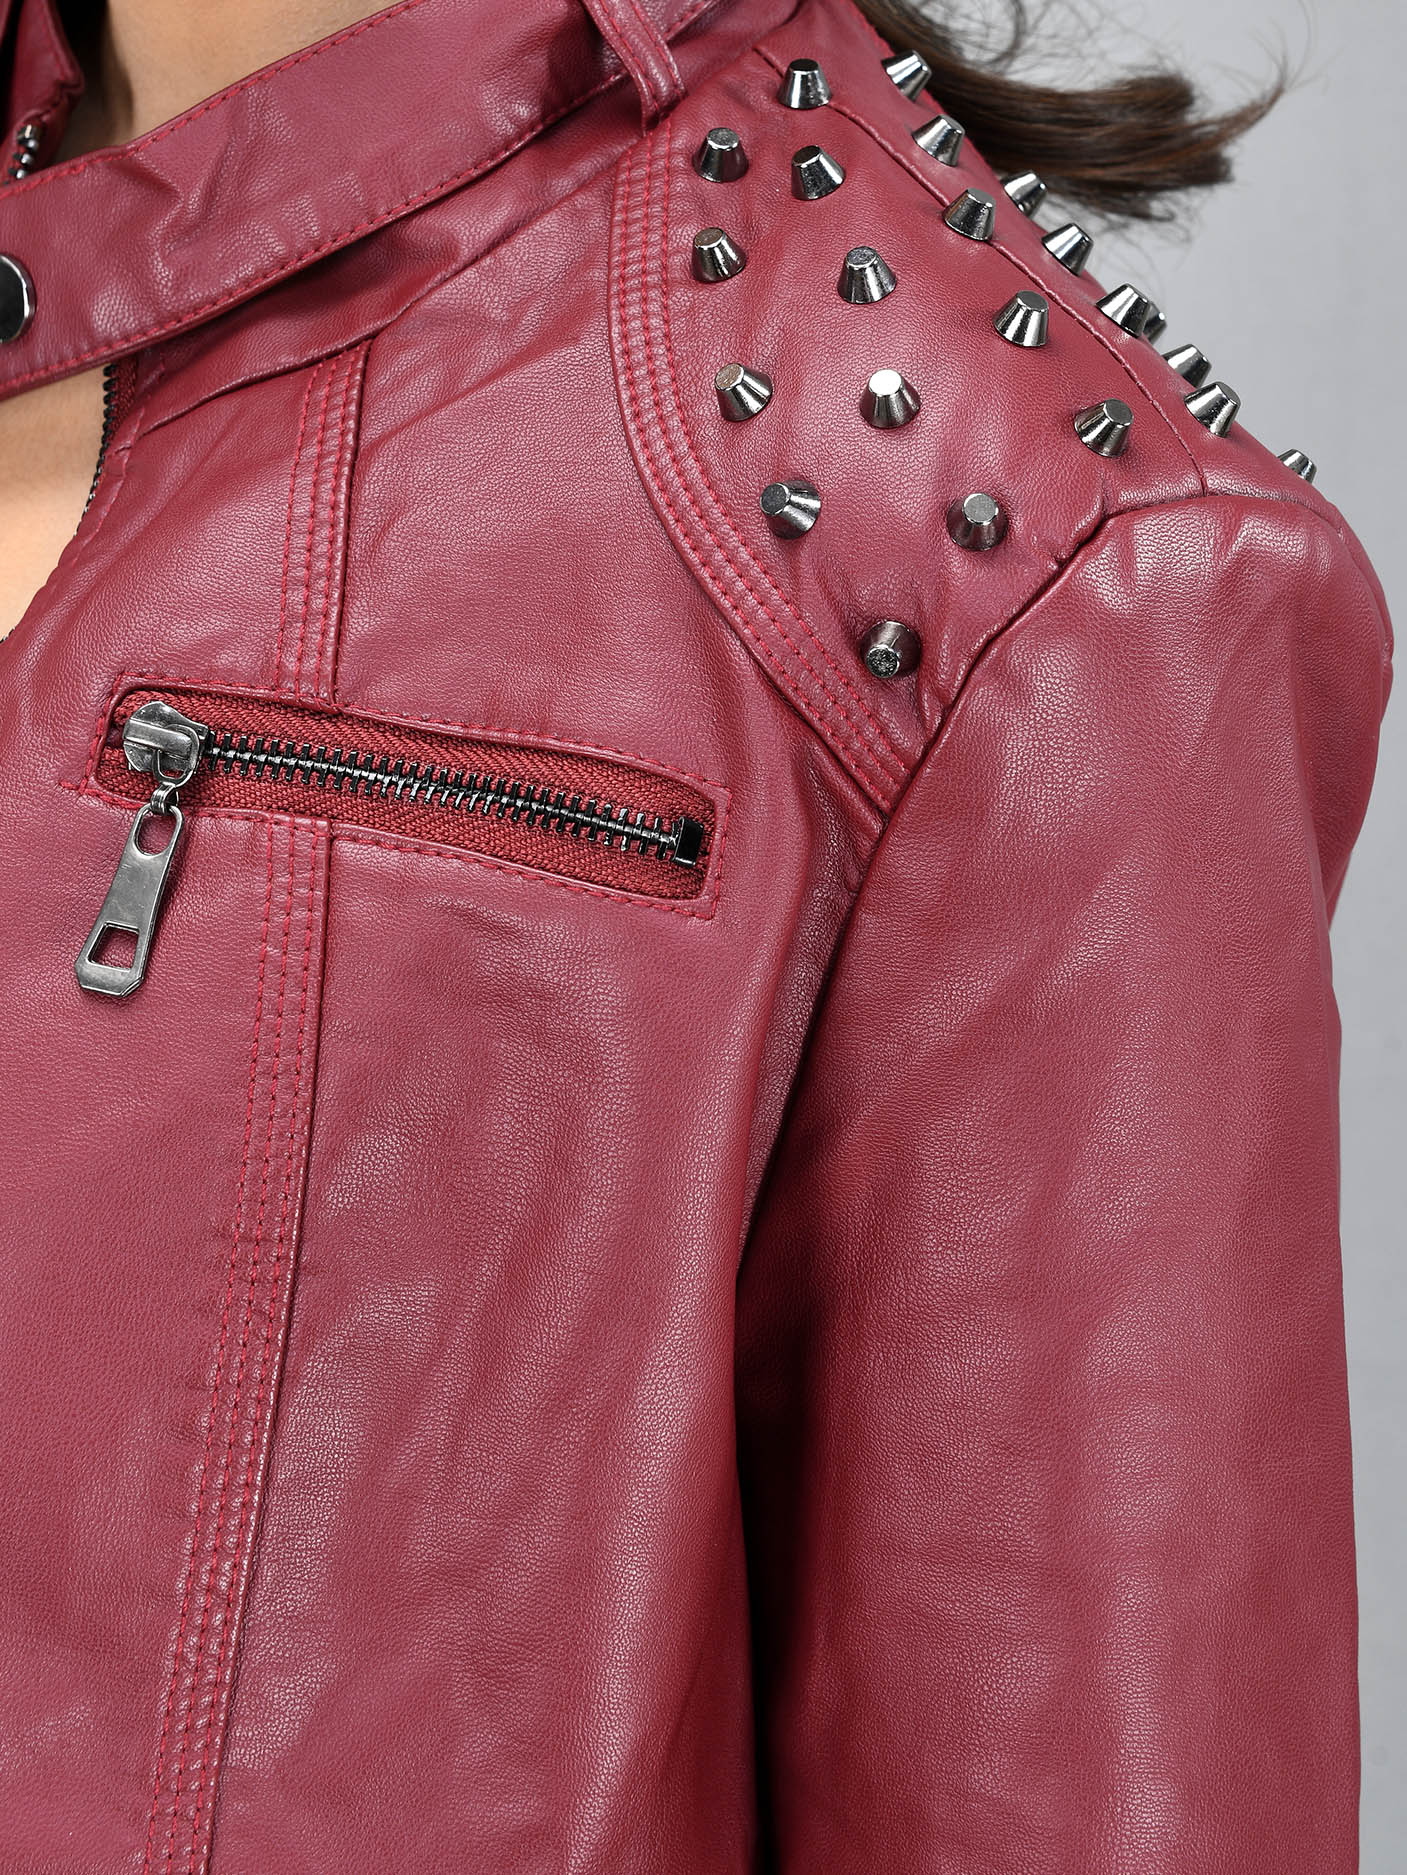 Studded Leather Jacket - Maroon